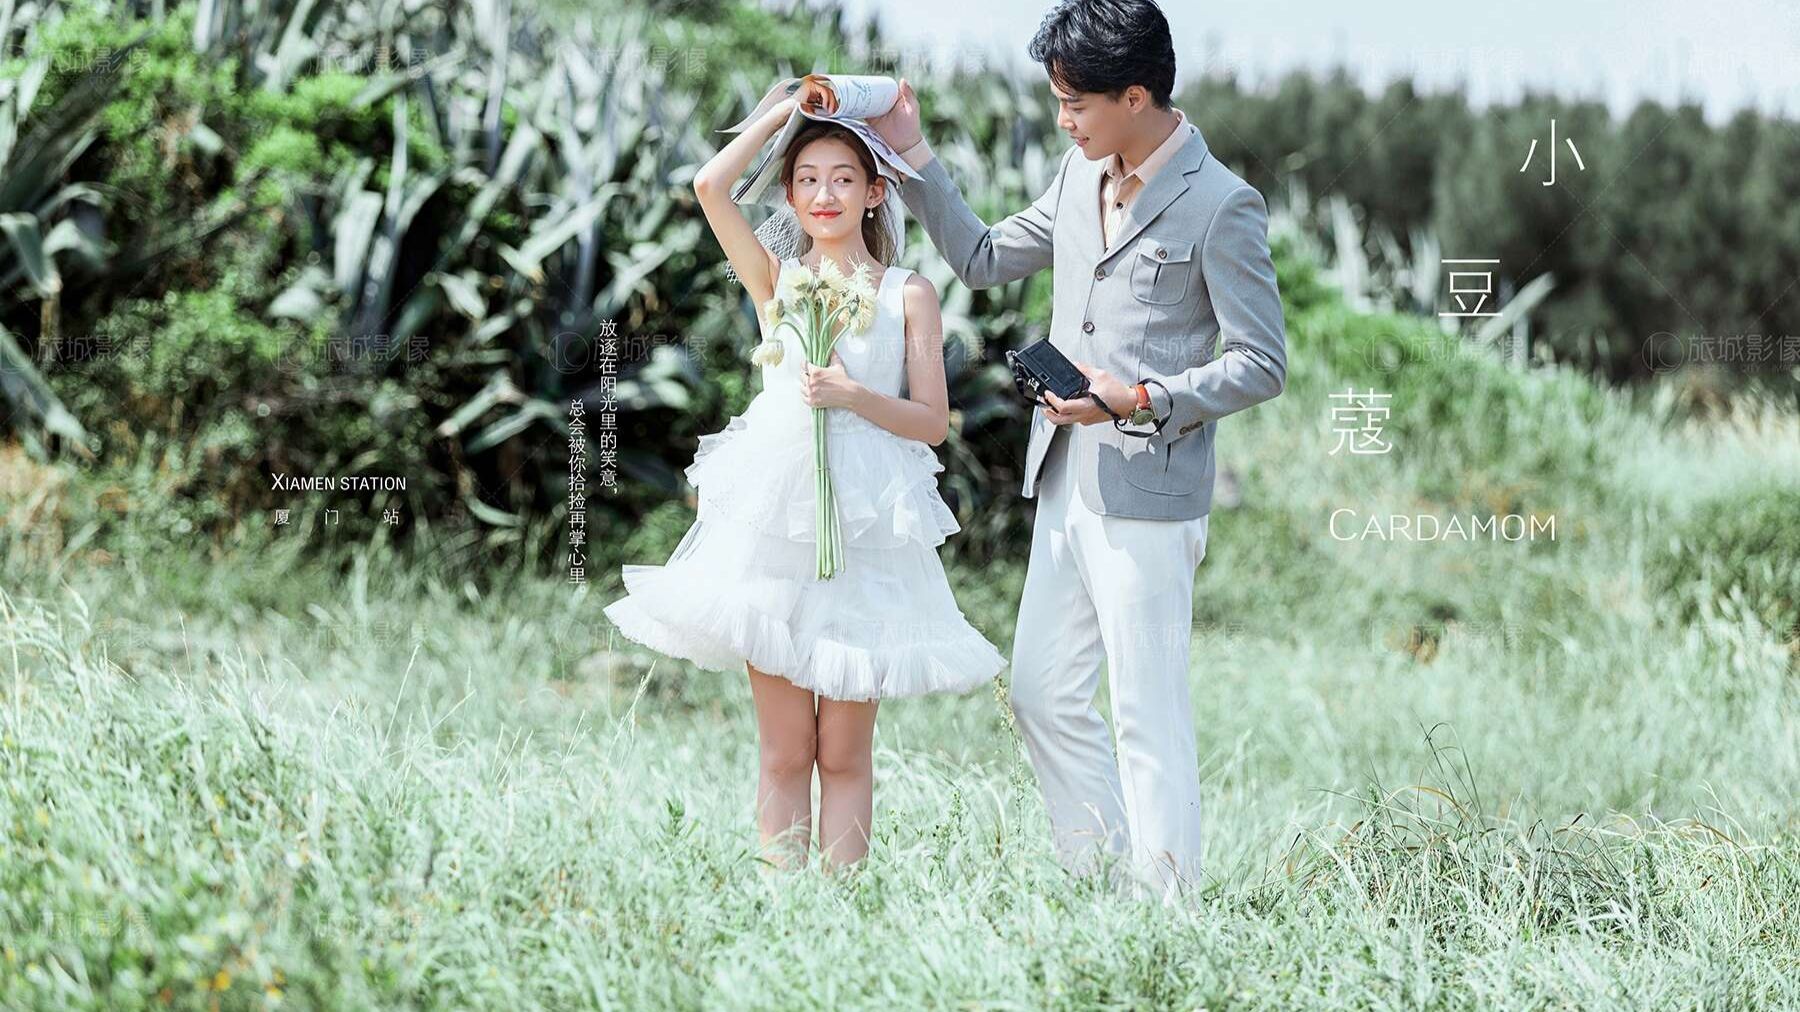 厦门台北纱罗婚纱摄影怎么样/官网价格/电话 - 婚礼纪